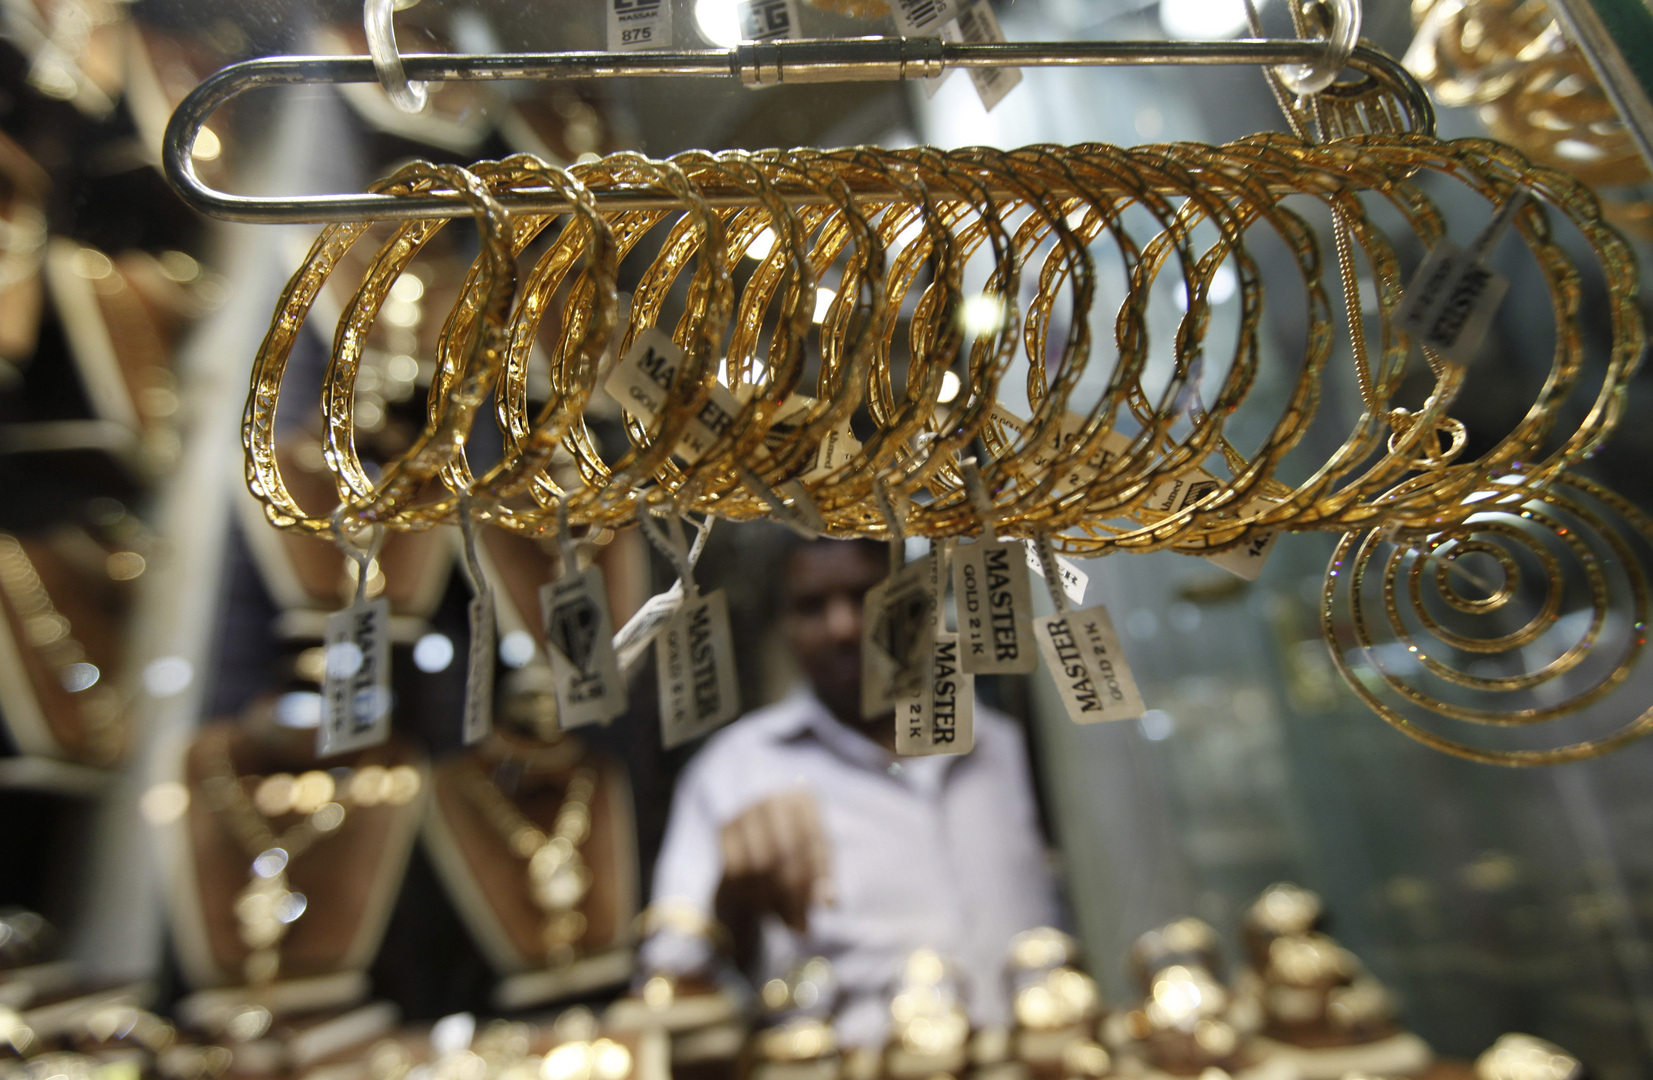 أسعار الذهب ترتفع لمستوى تاريخي في مصر